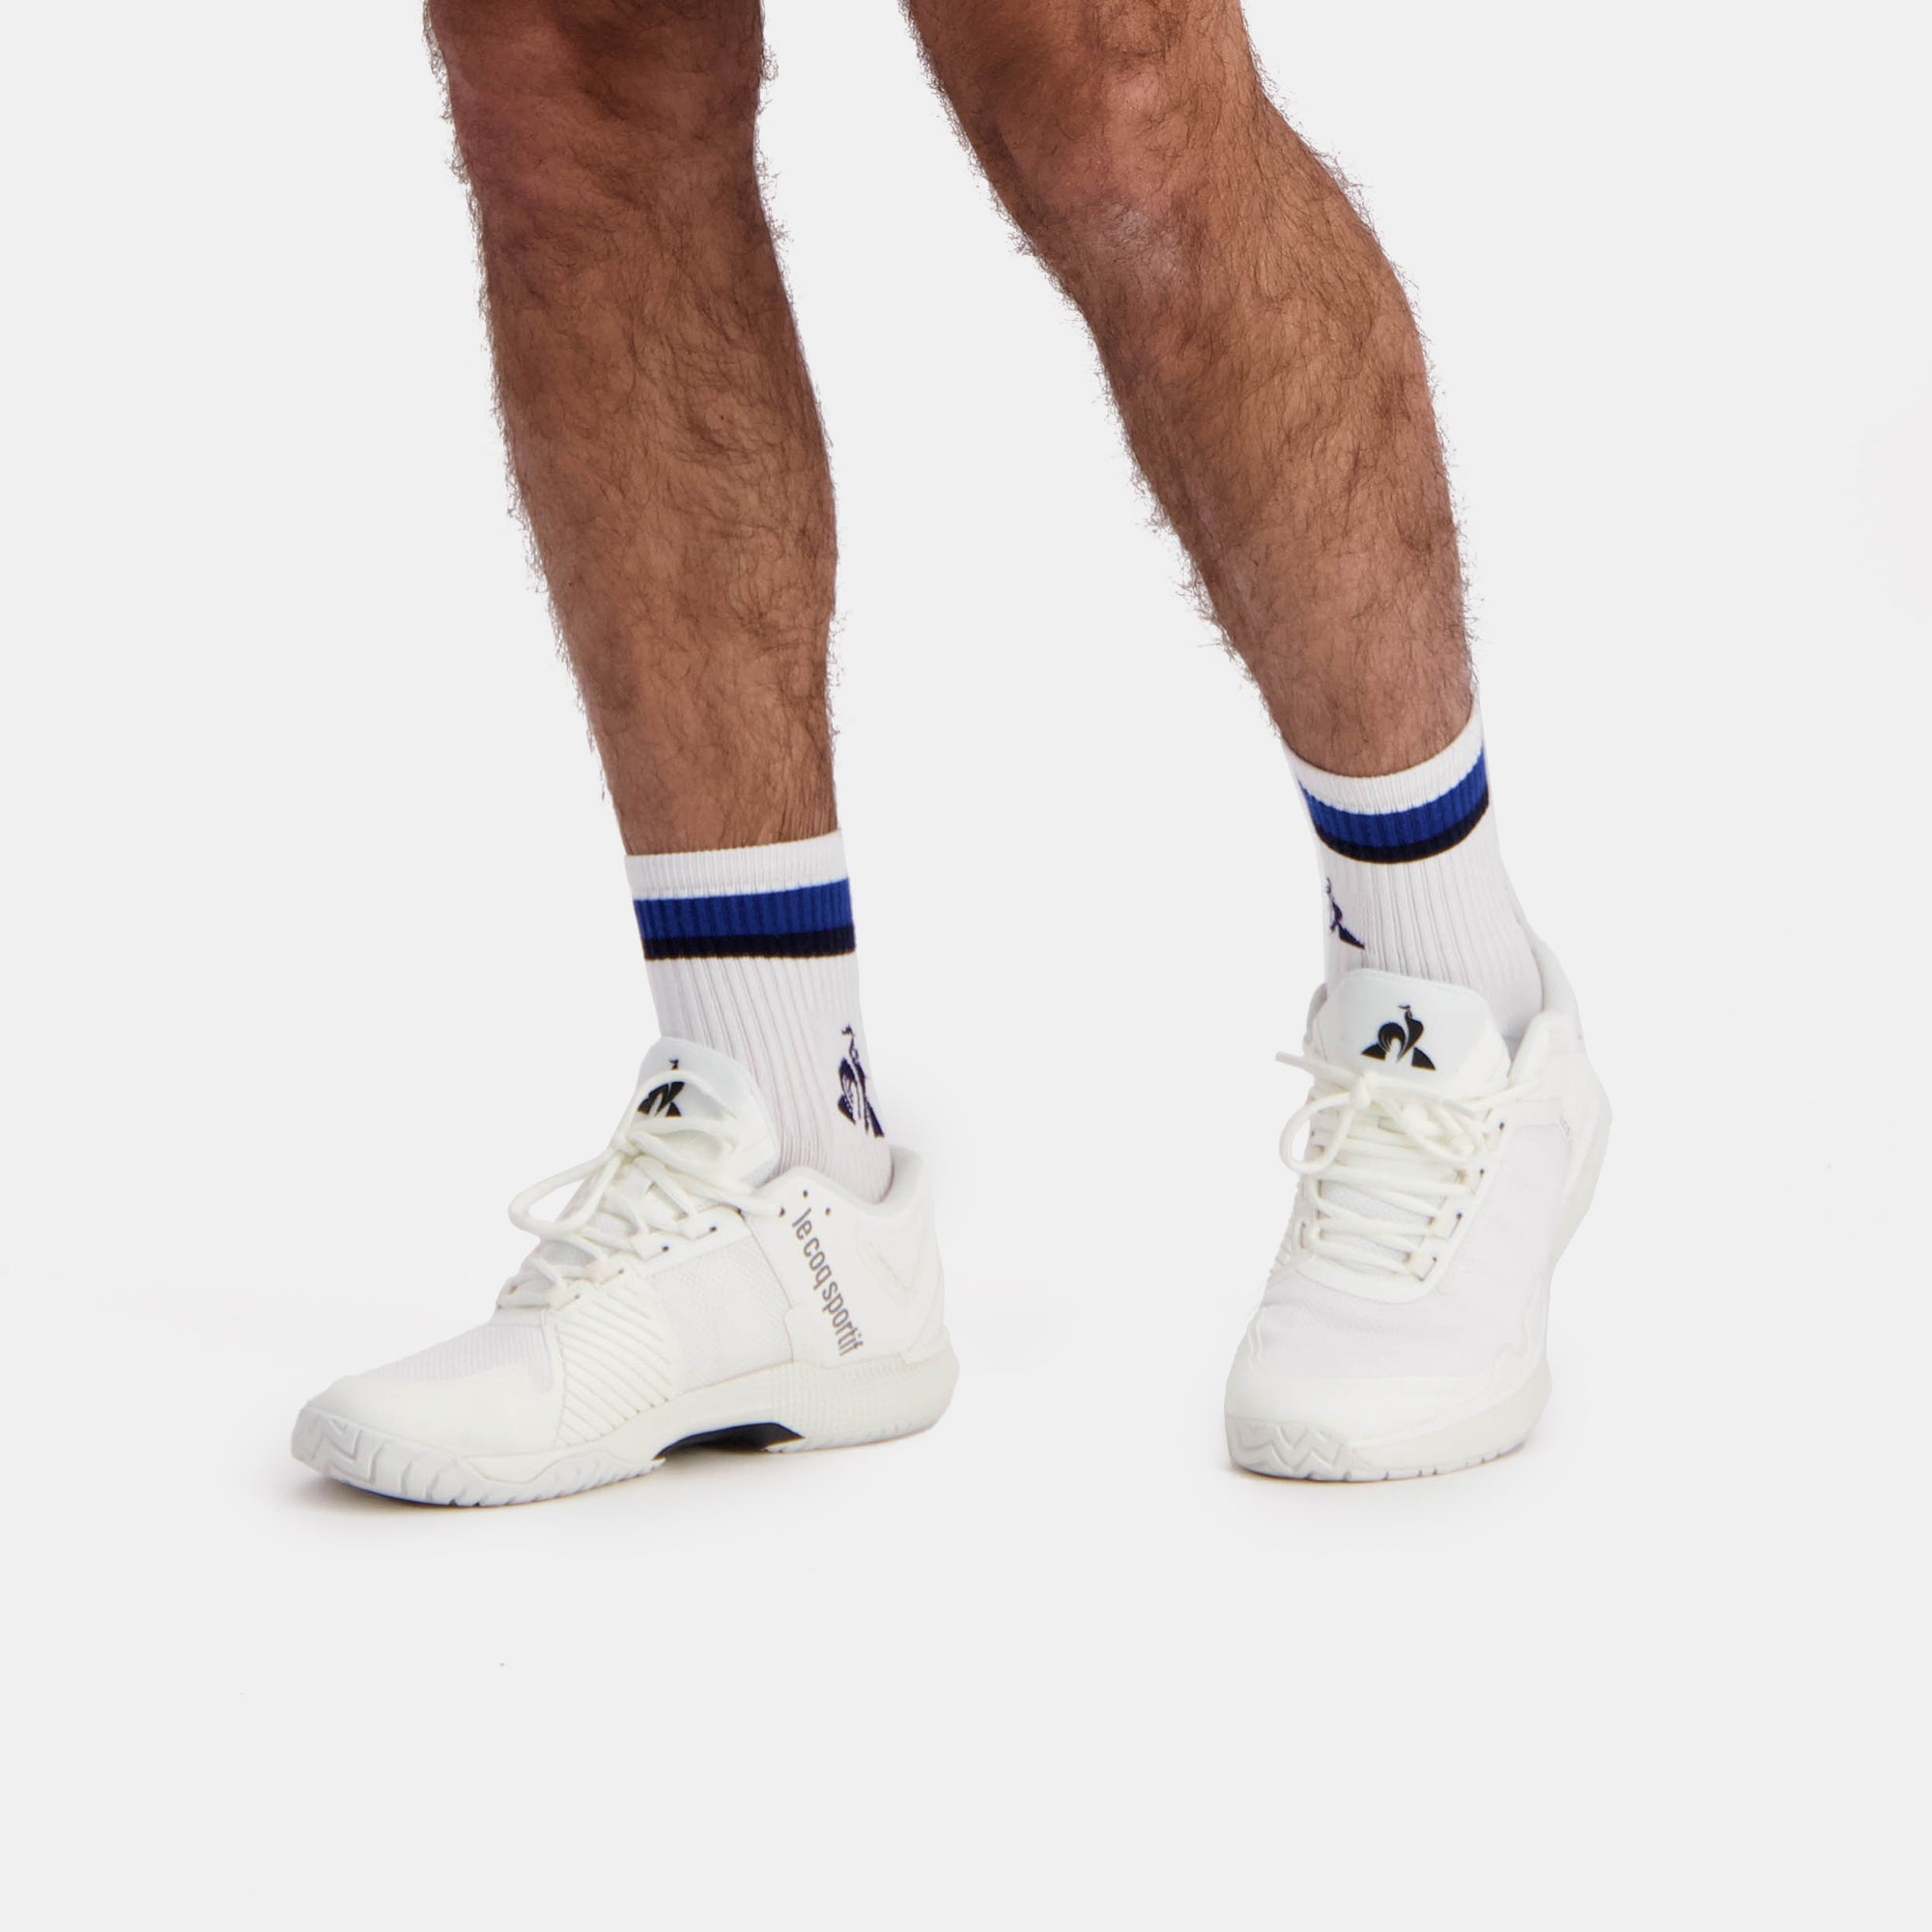 2410529-TENNIS Chaussettes 24 n.o.w/lapis blue/s  | Socken de sport Unisex